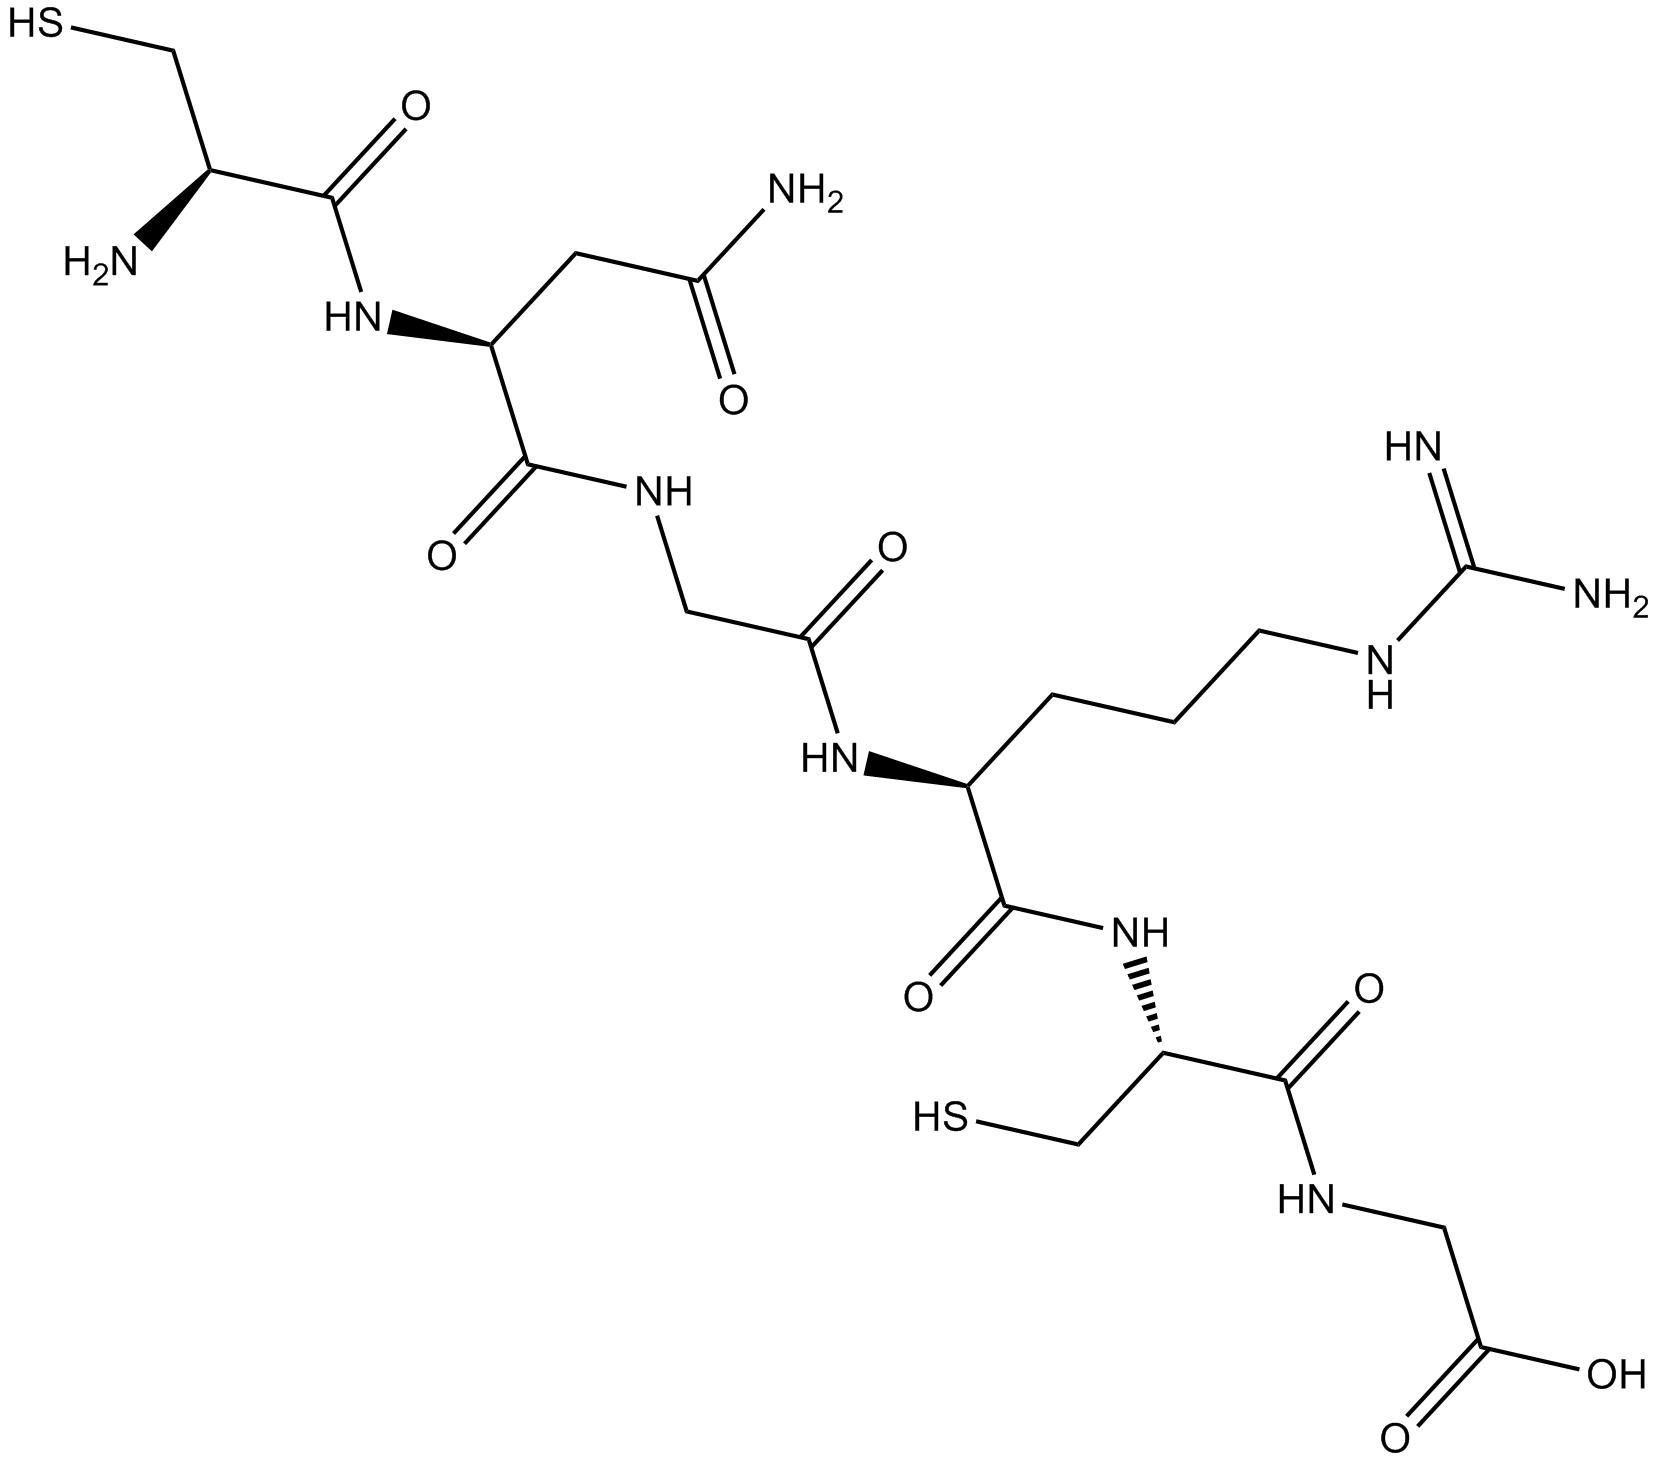 NGR peptide